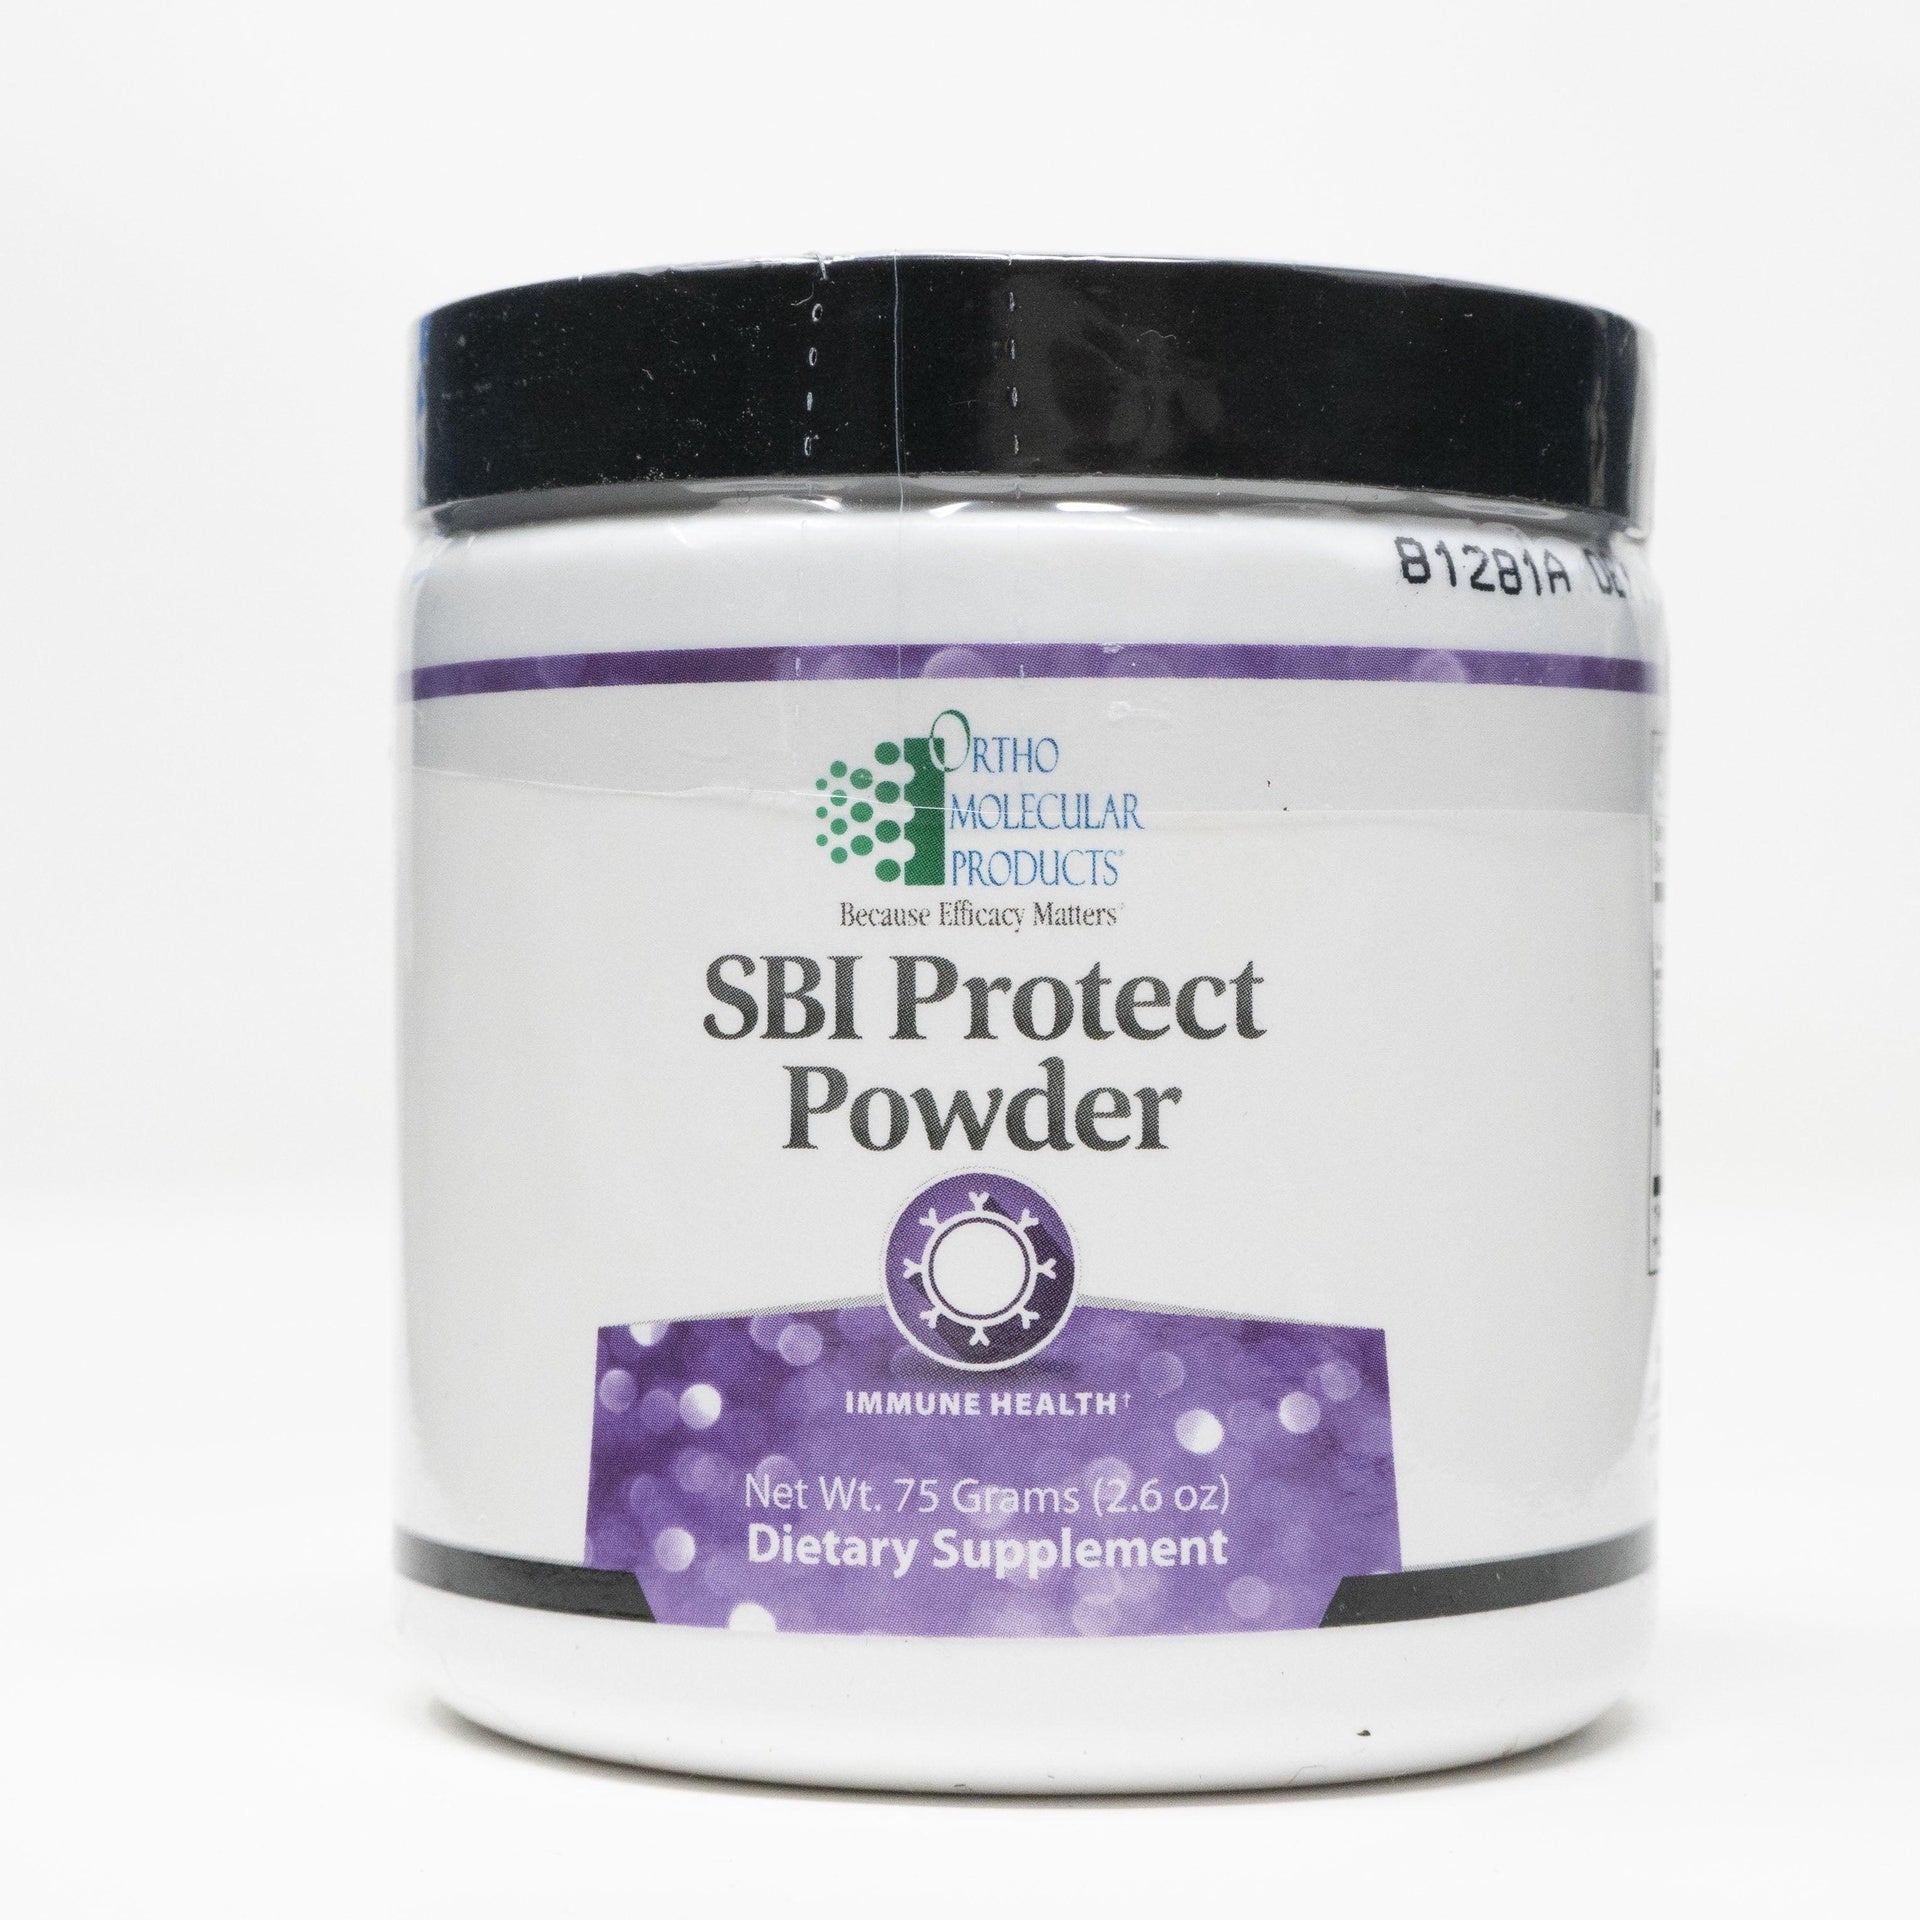 SBI Protect Powder.